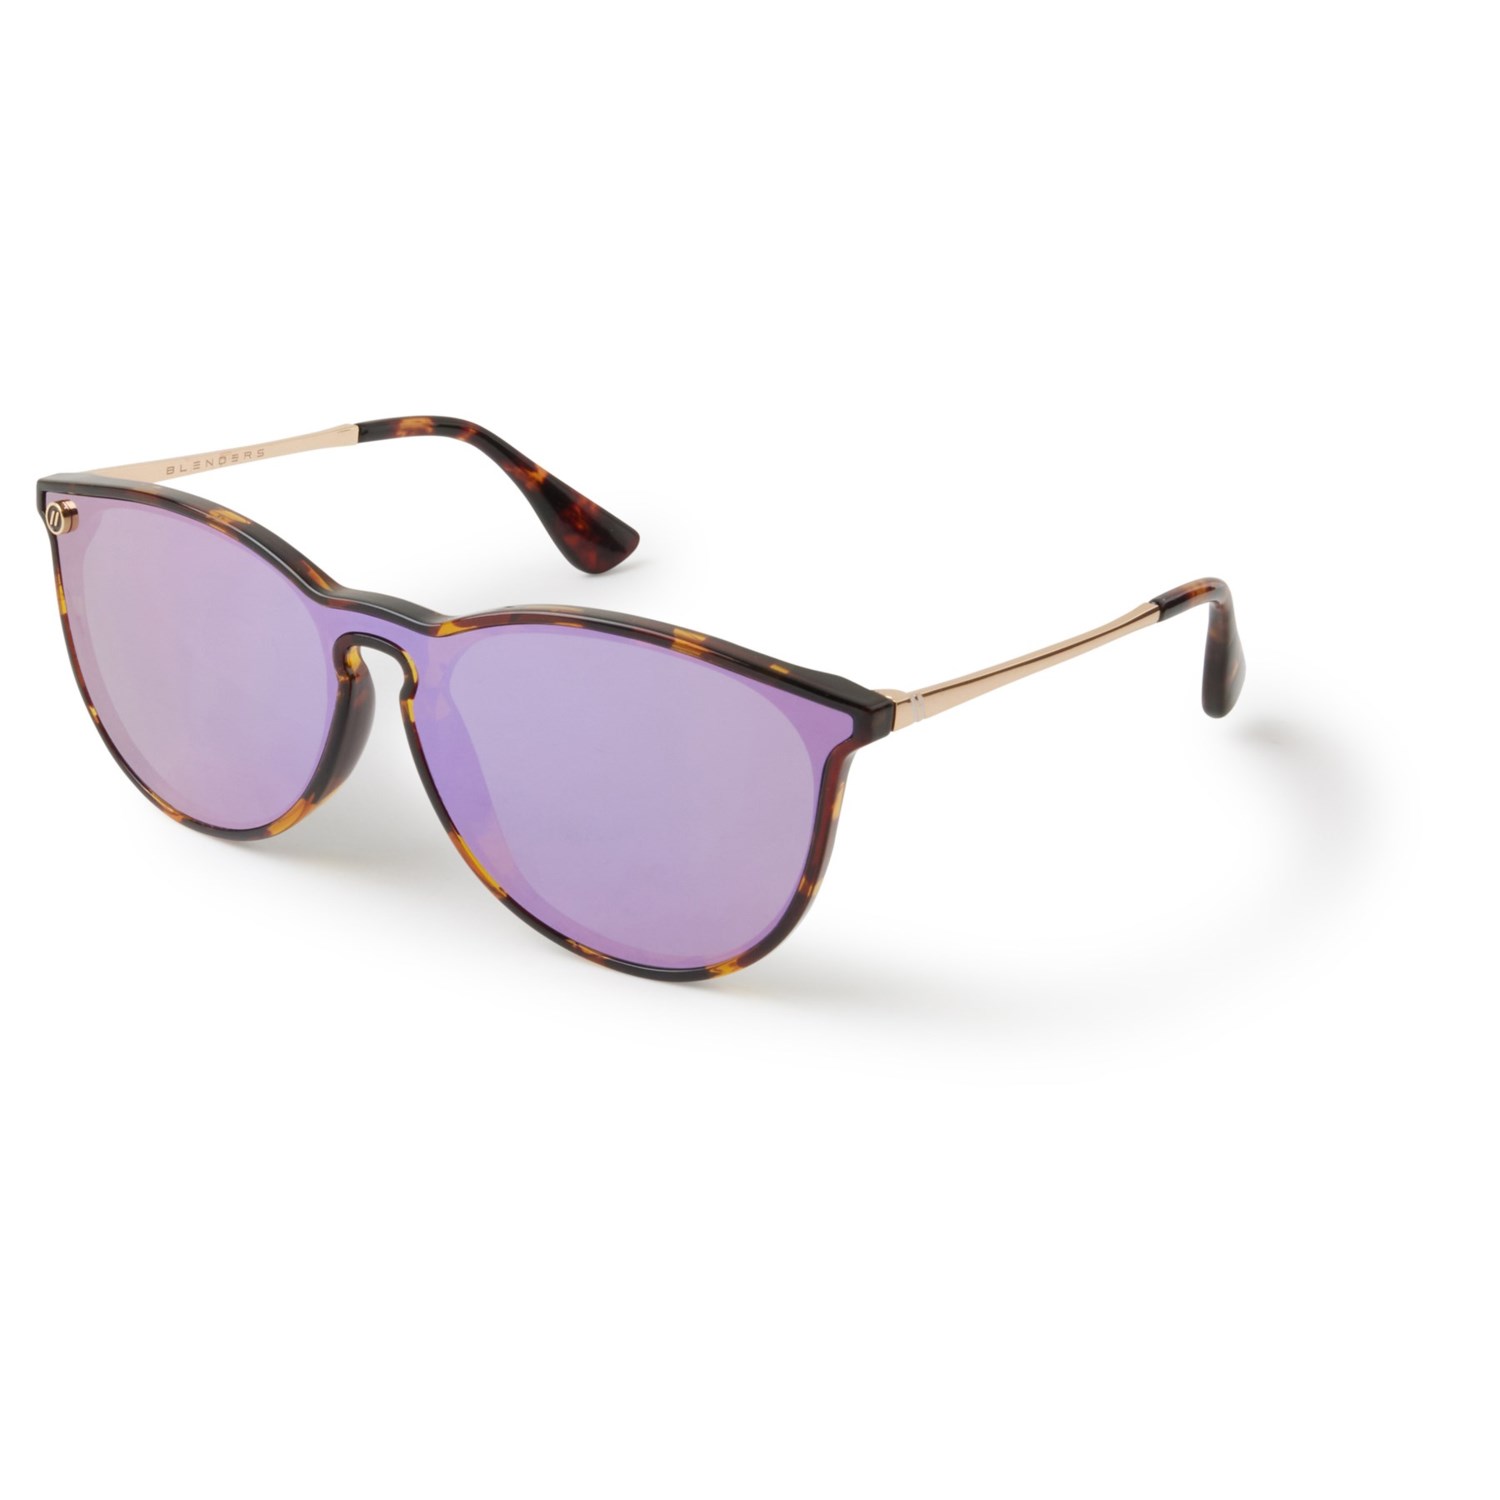 https://i.stpost.com/blenders-north-park-x2-flash-riley-sunglasses-polarized-mirror-lenses-for-men-and-women-in-tortoise-lavender~p~3wypd_01~1500.2.jpg